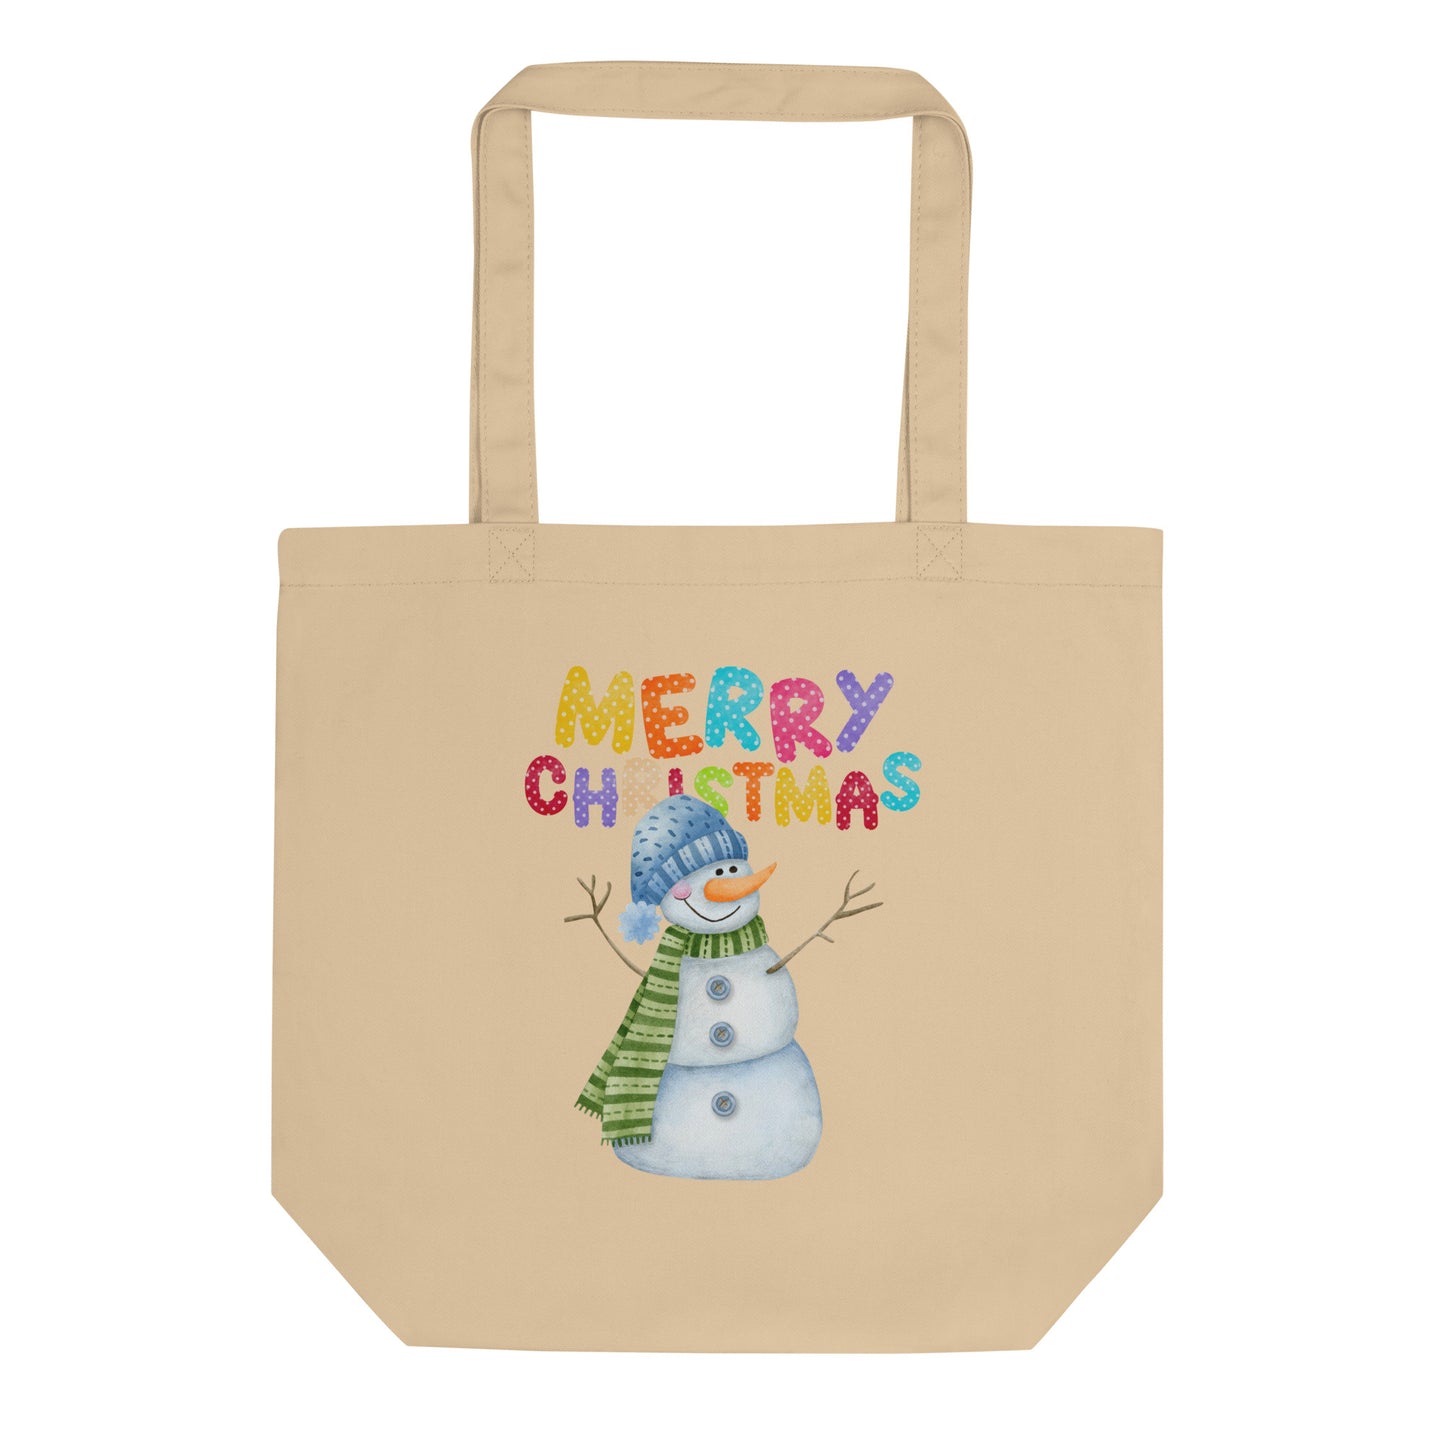 Merry Christmas Snowman Eco Tote Bag